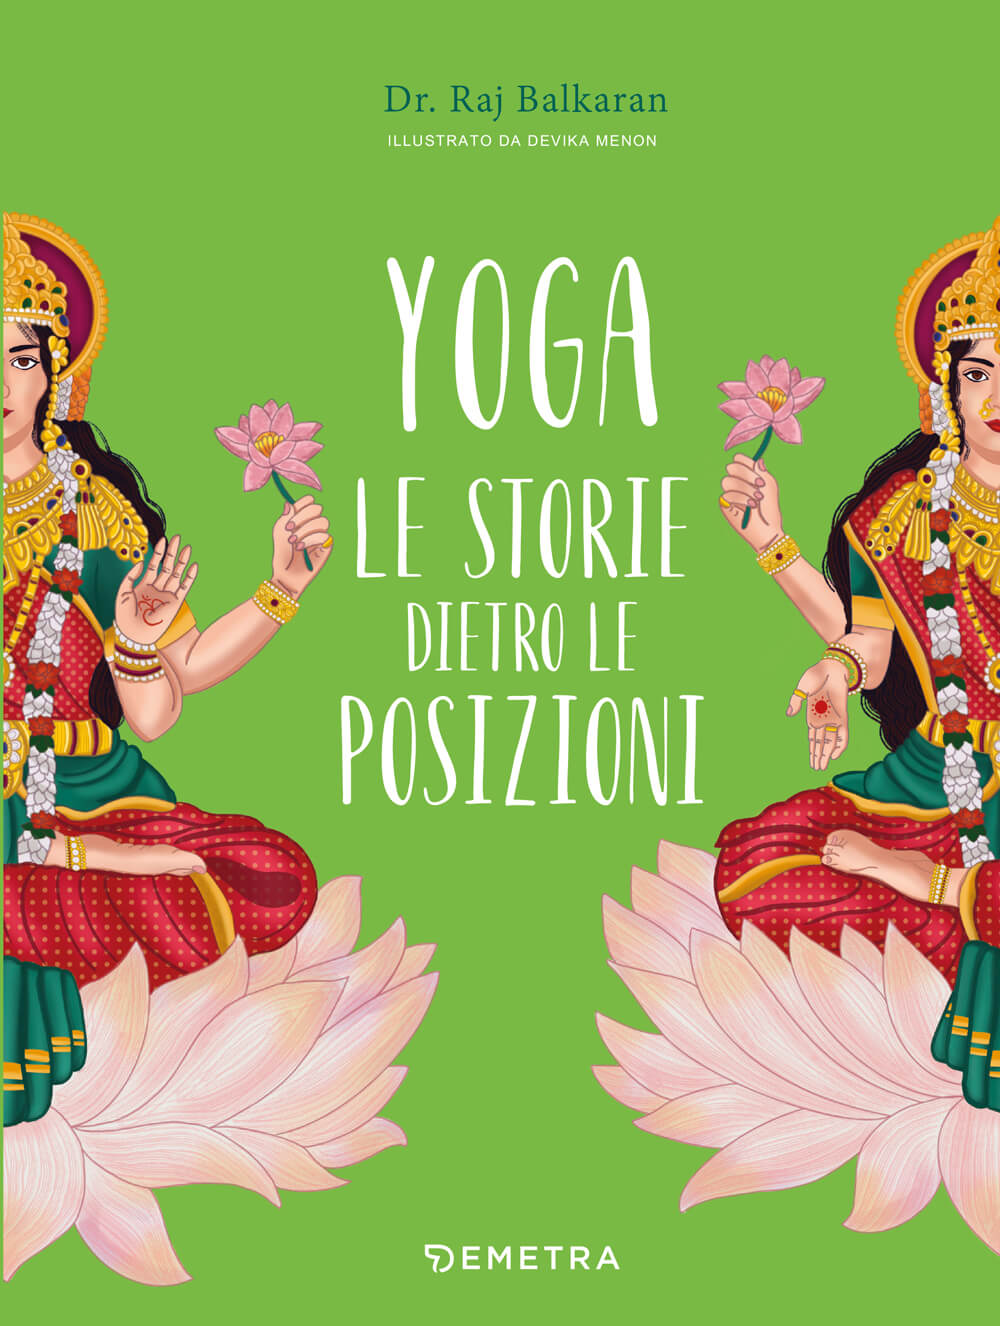 Copertina del libro consigliato: "Yoga. Le storie dietro le posizioni" | Ayurvedic Point©